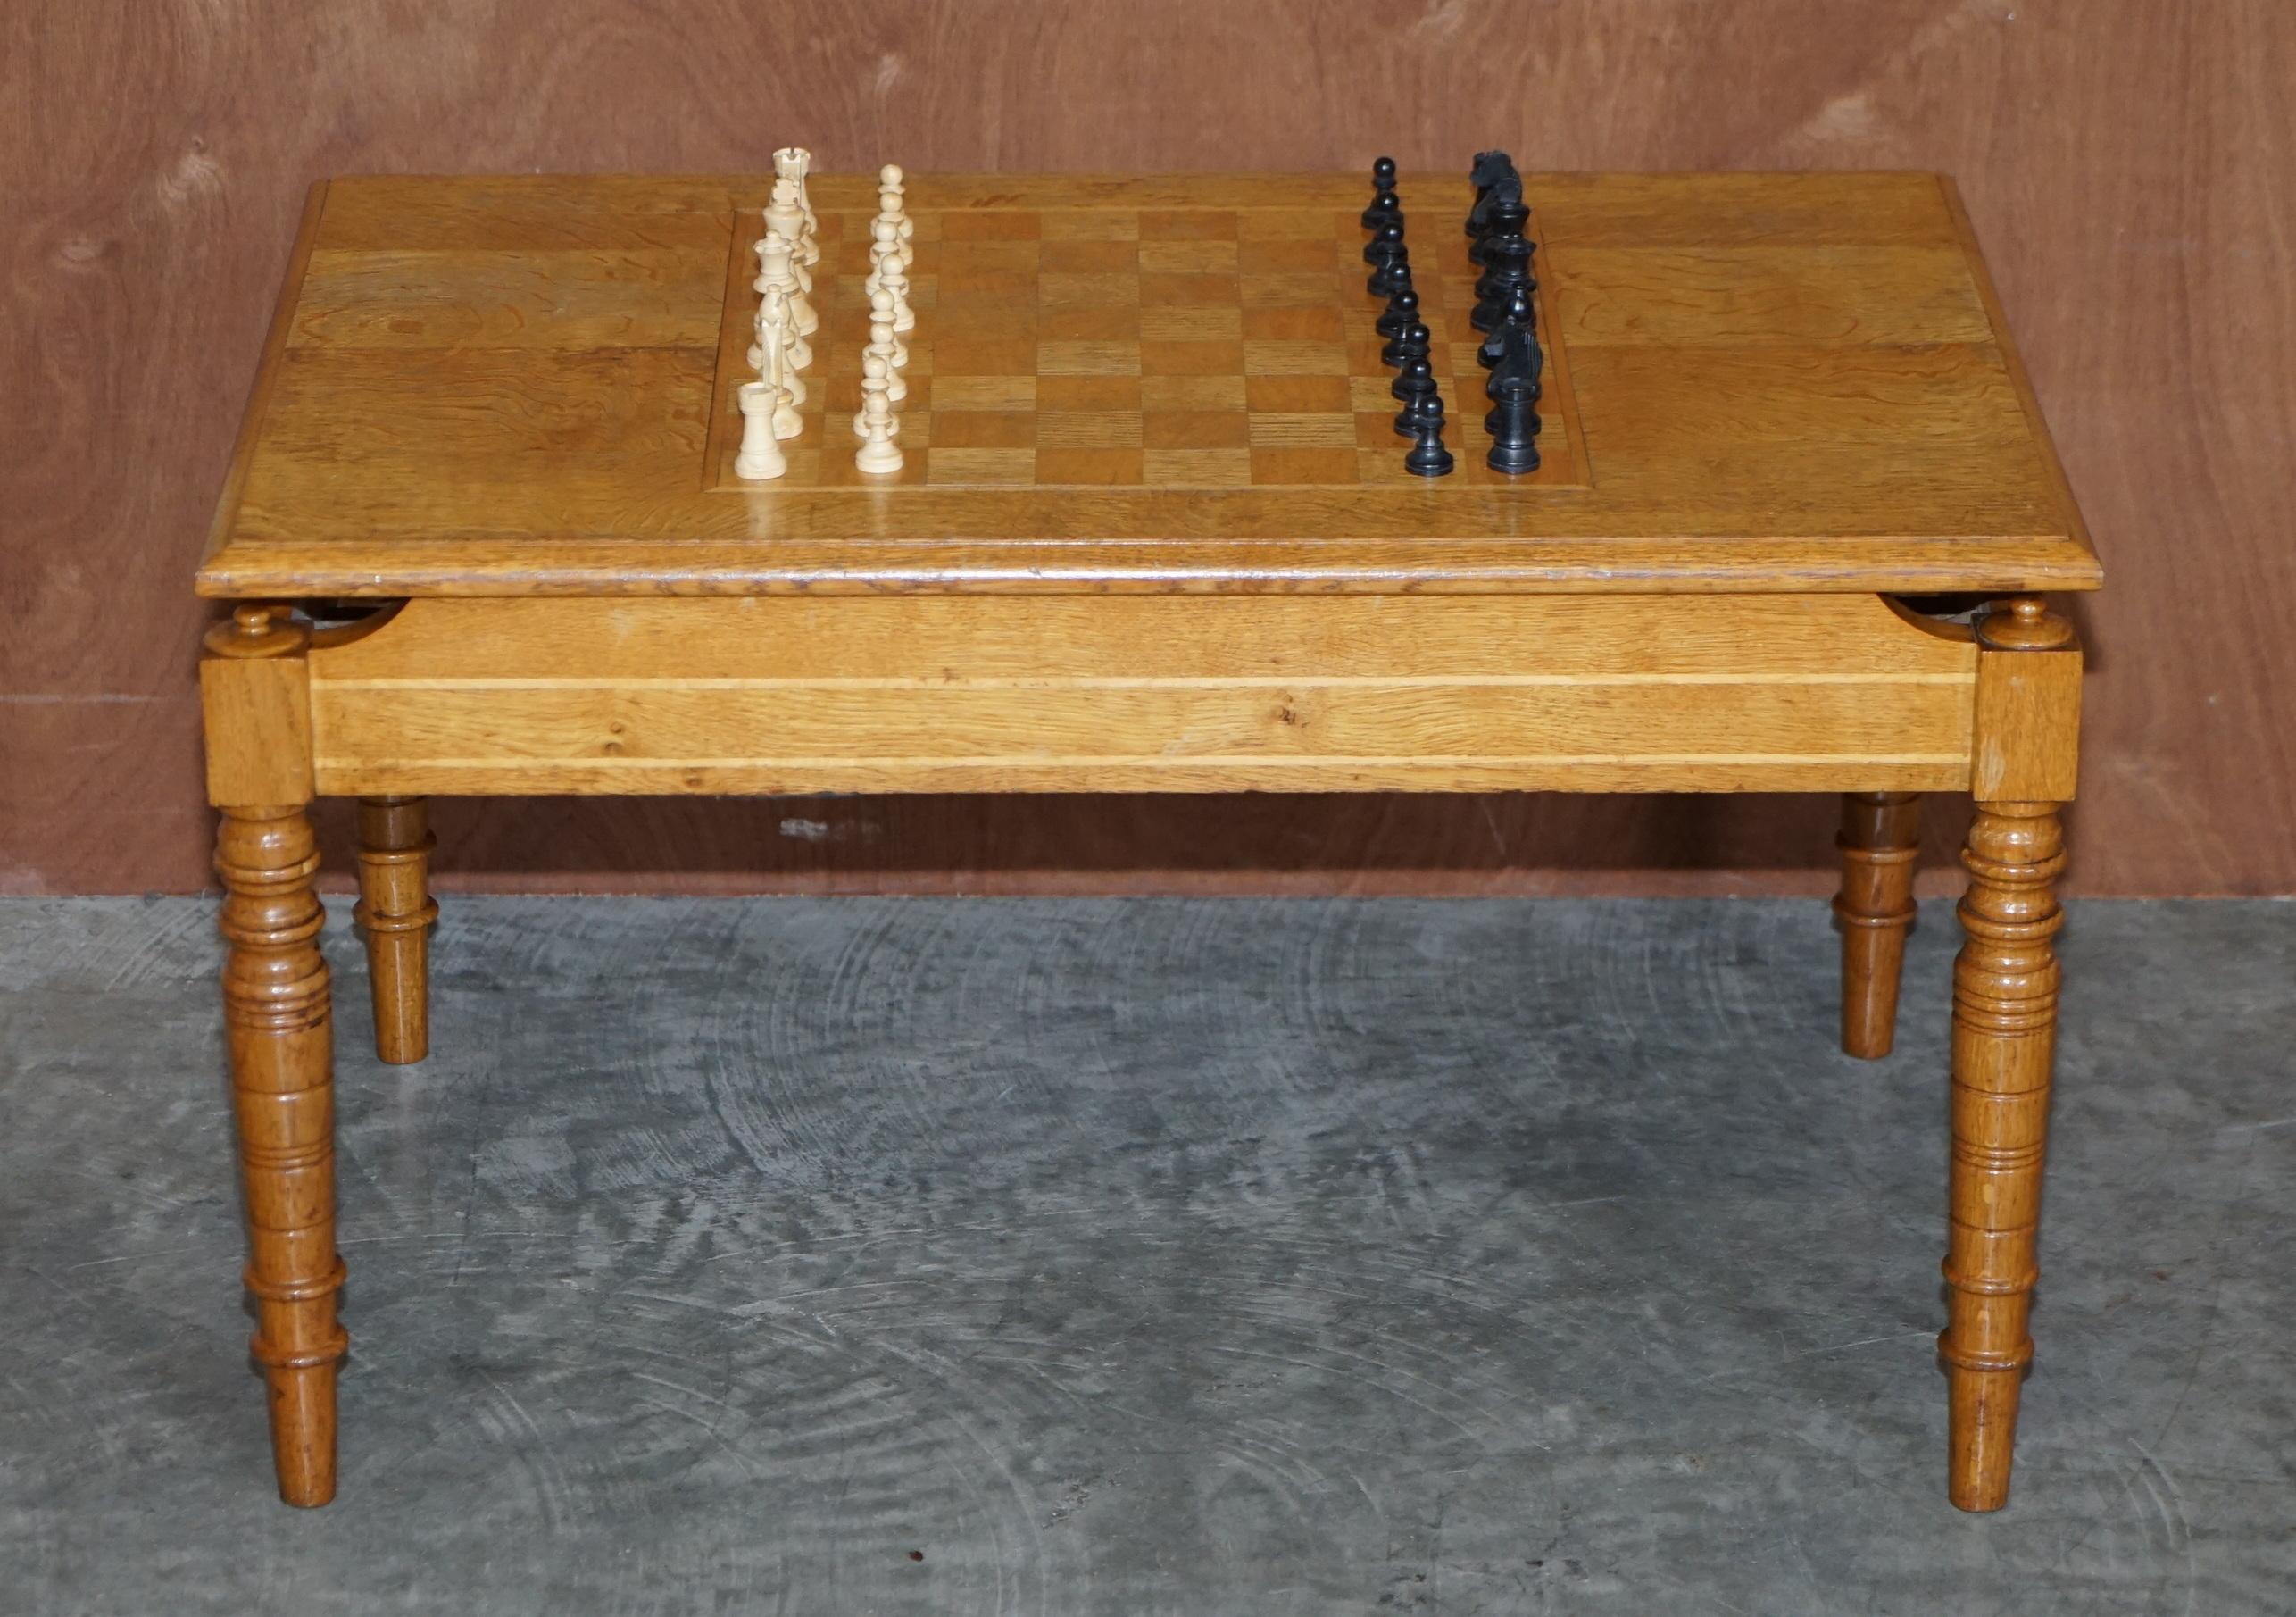 Nous sommes ravis de proposer à la vente cette charmante table basse vintage en chêne miel anglais avec un jeu d'échecs ébonisé d'époque.

Cette pièce est belle et bien faite, elle peut être utilisée comme table basse normale bien sûr, elle a un